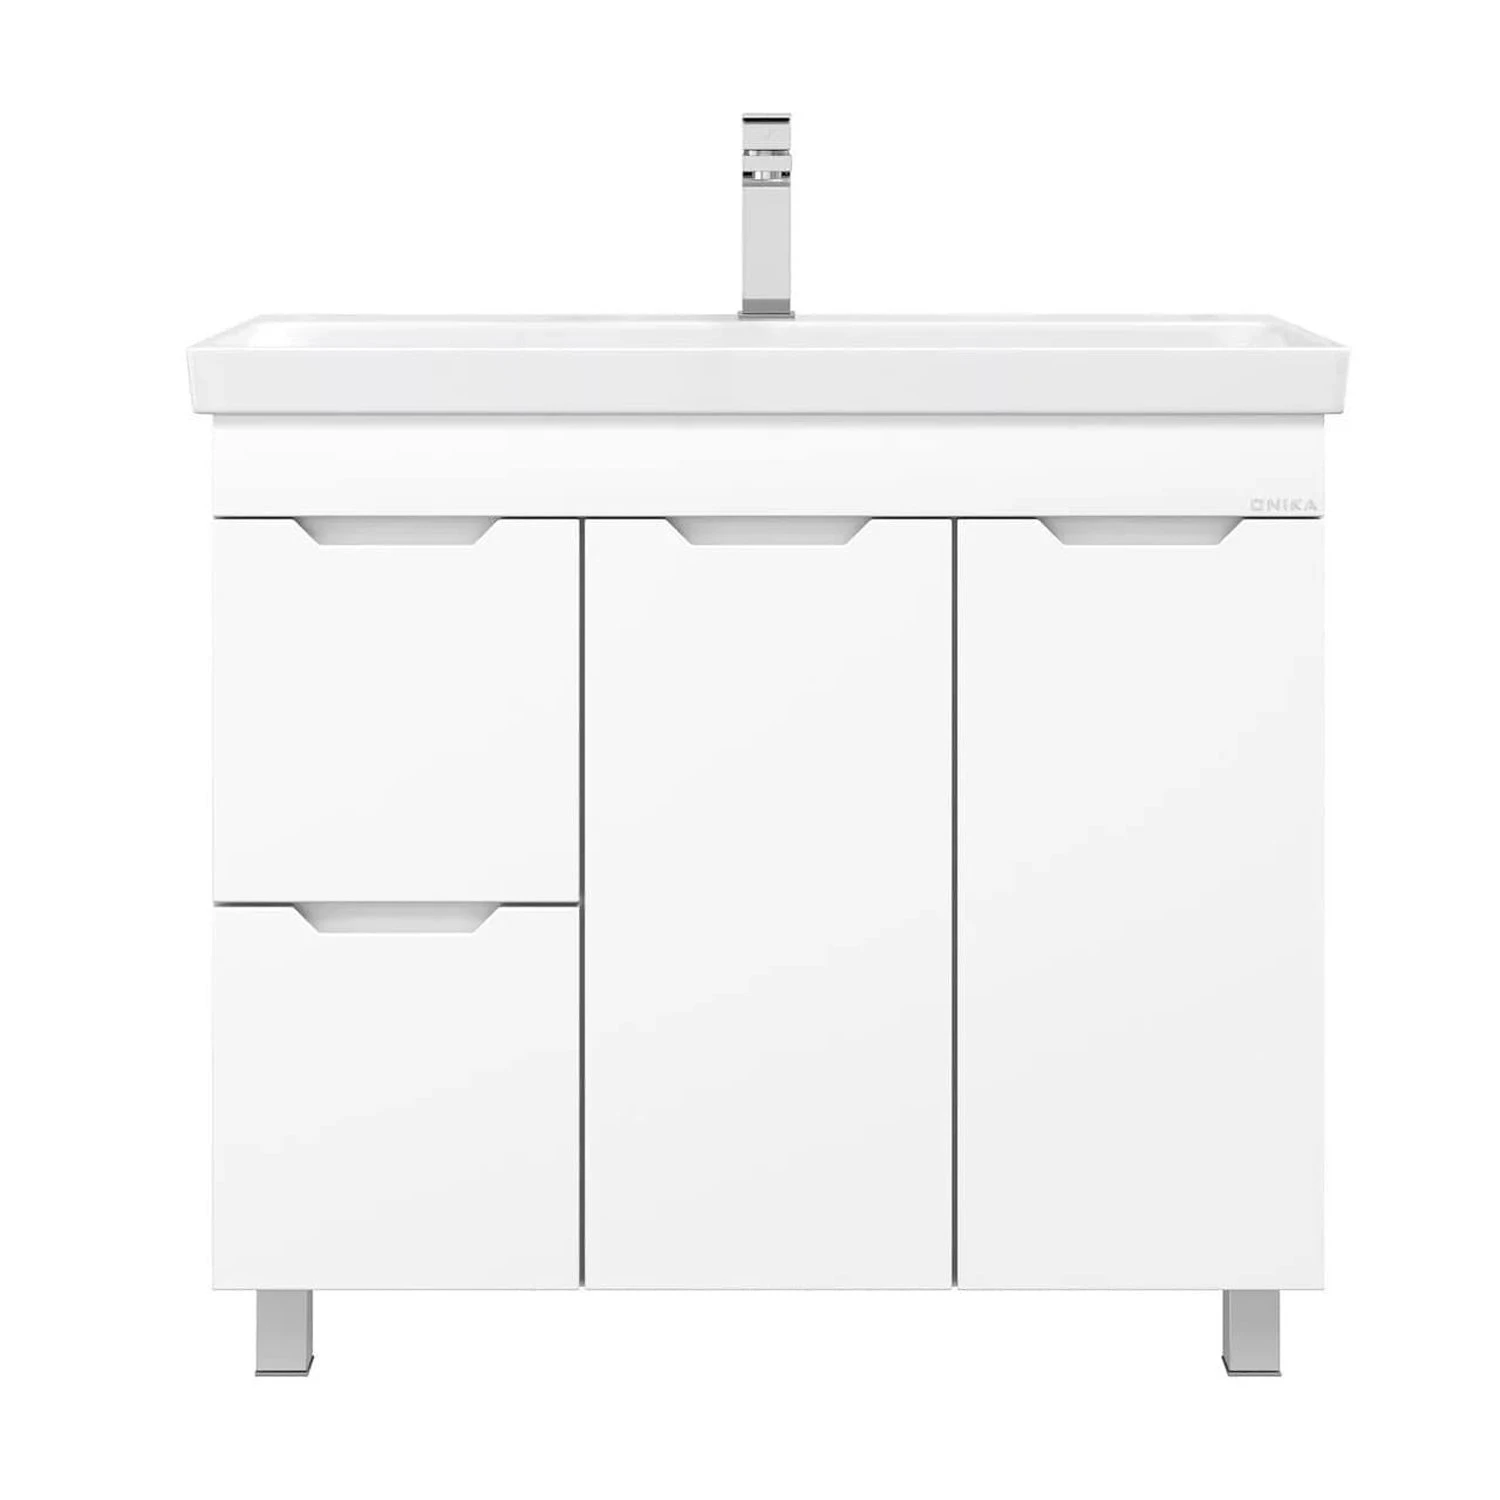 Мебель для ванной Оника Айленд 90, с бельевой корзиной, цвет белый